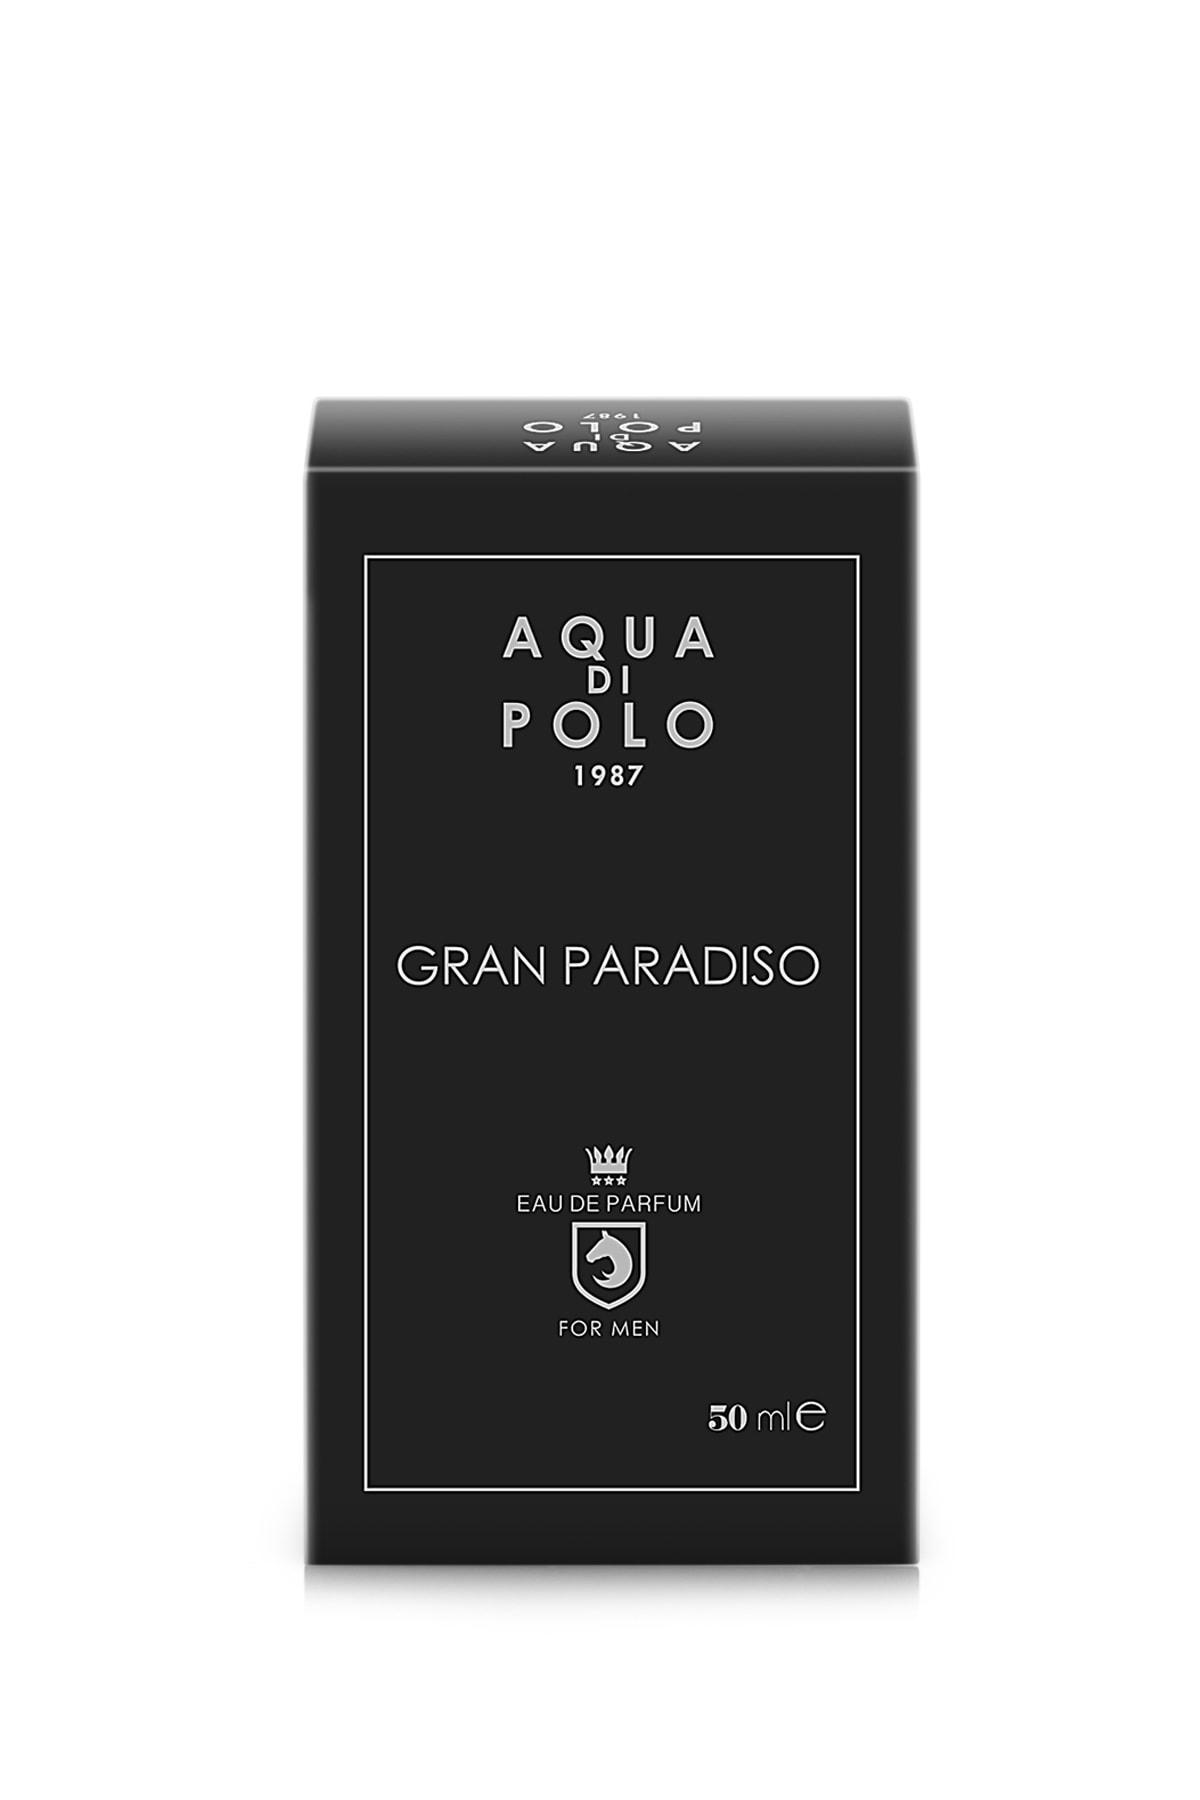 ادوکلن مردانه Aqua Di Polo 1987 مدل Gran Paradiso کد.1001